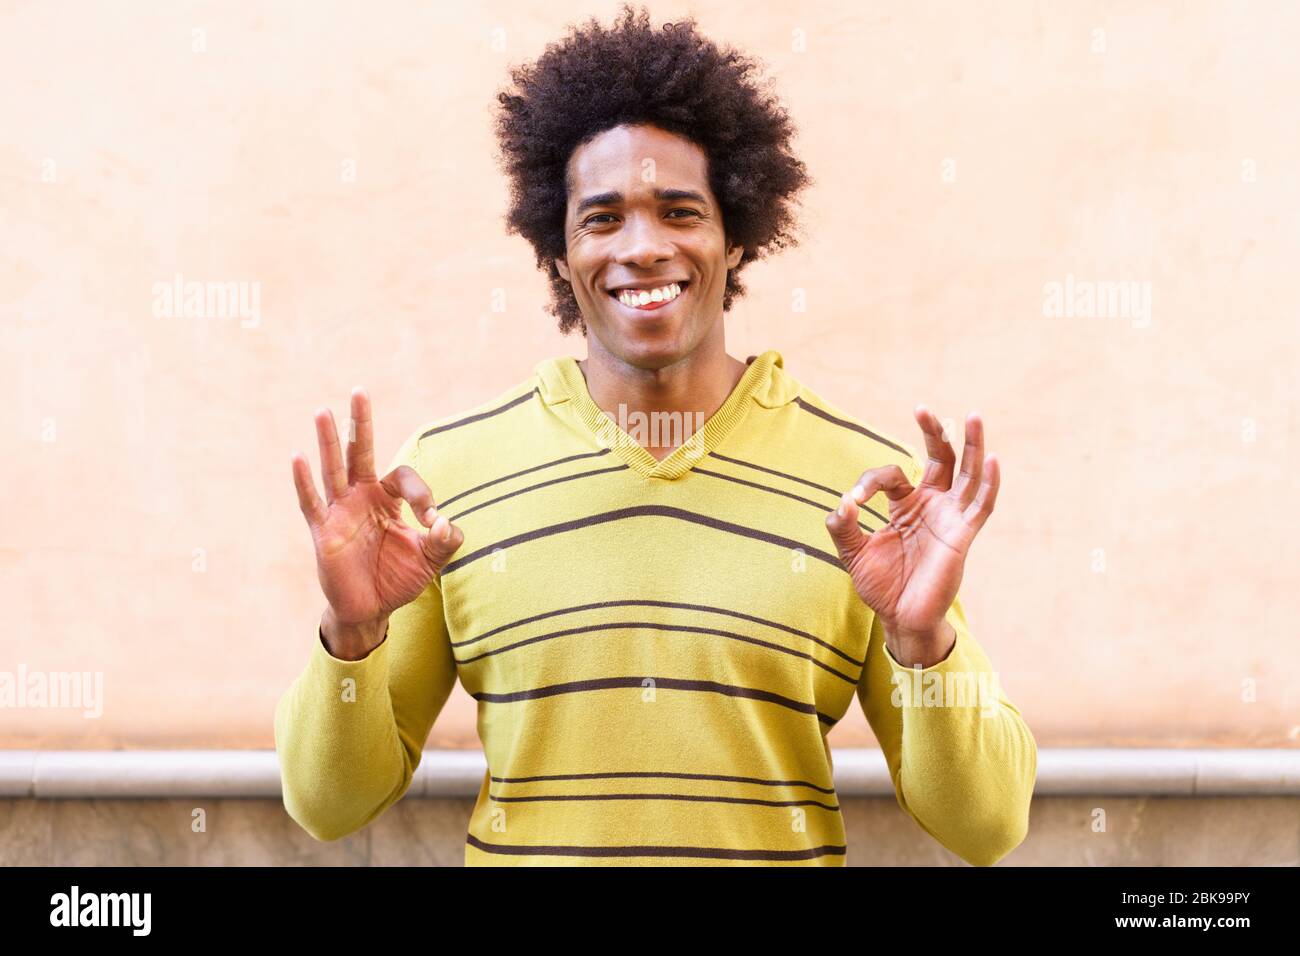 Uomo nero con i capelli afro che mette un'espressione divertente Foto Stock